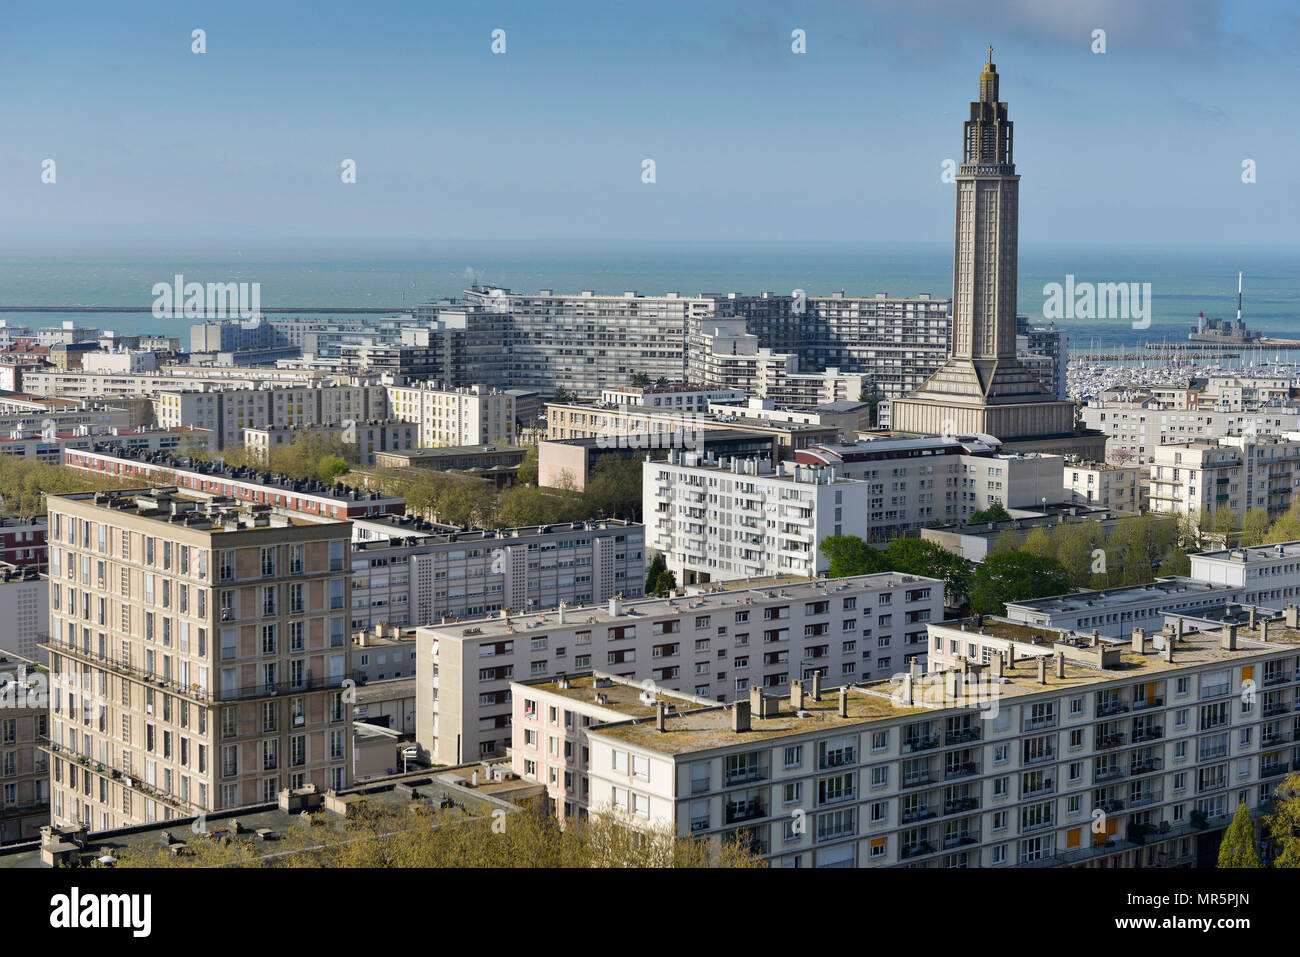 Le Havre (Normandie, nord ouest de la France) : vue d'ensemble de l'Hôtel de Ville. Sur la droite, l'église St. Joseph, bâtiment inscrit à titre de lieu historique national Banque D'Images